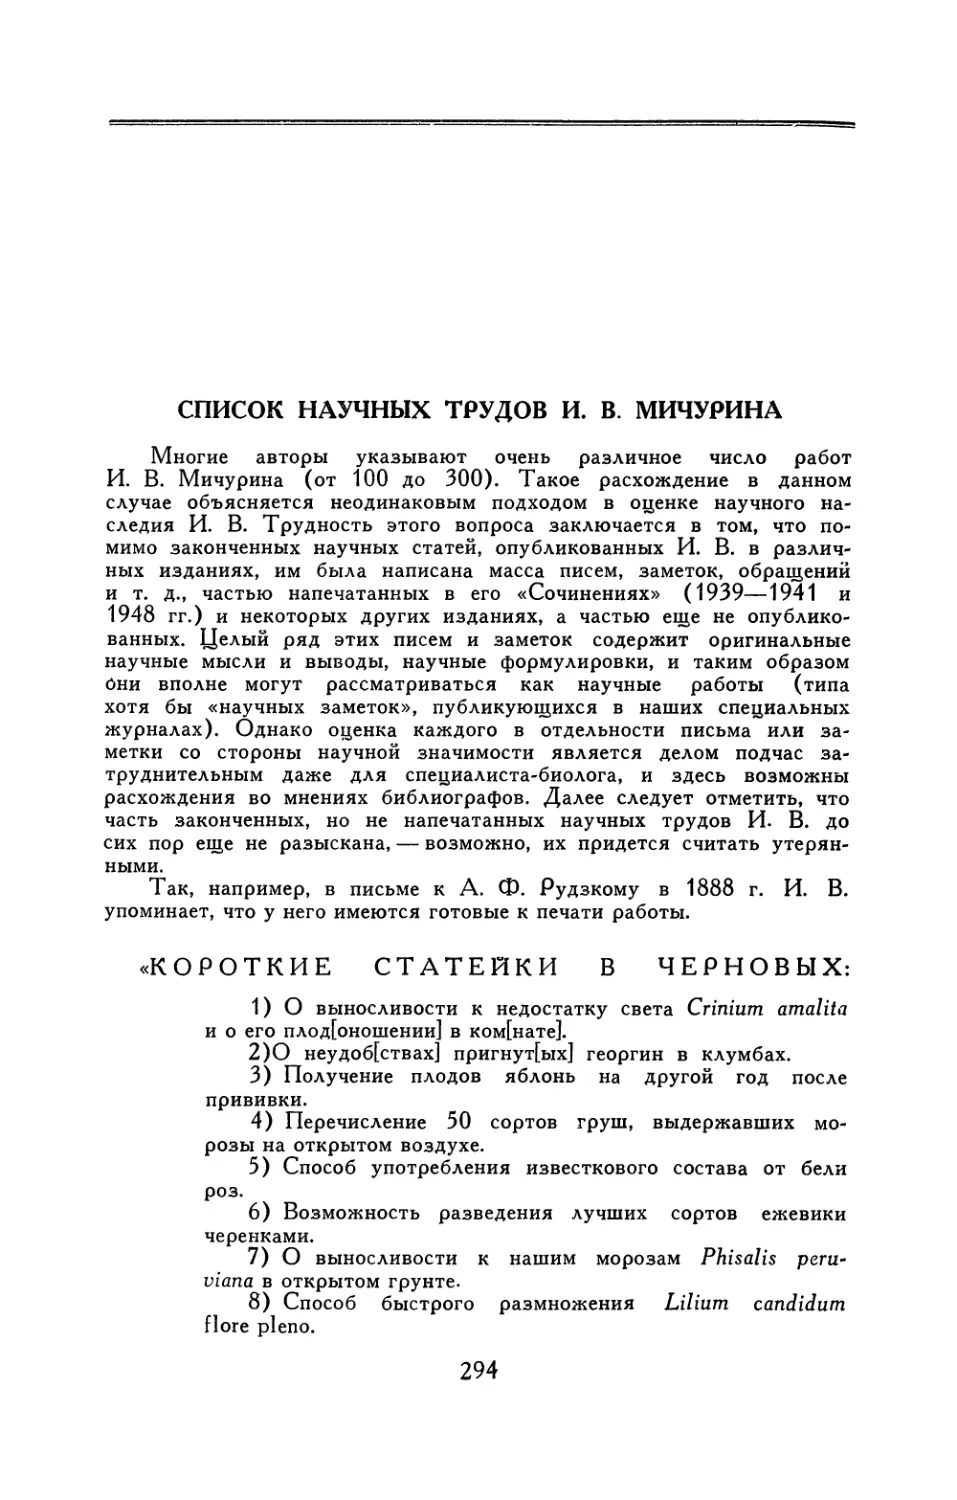 Список научных трудов И. В. Мичурина